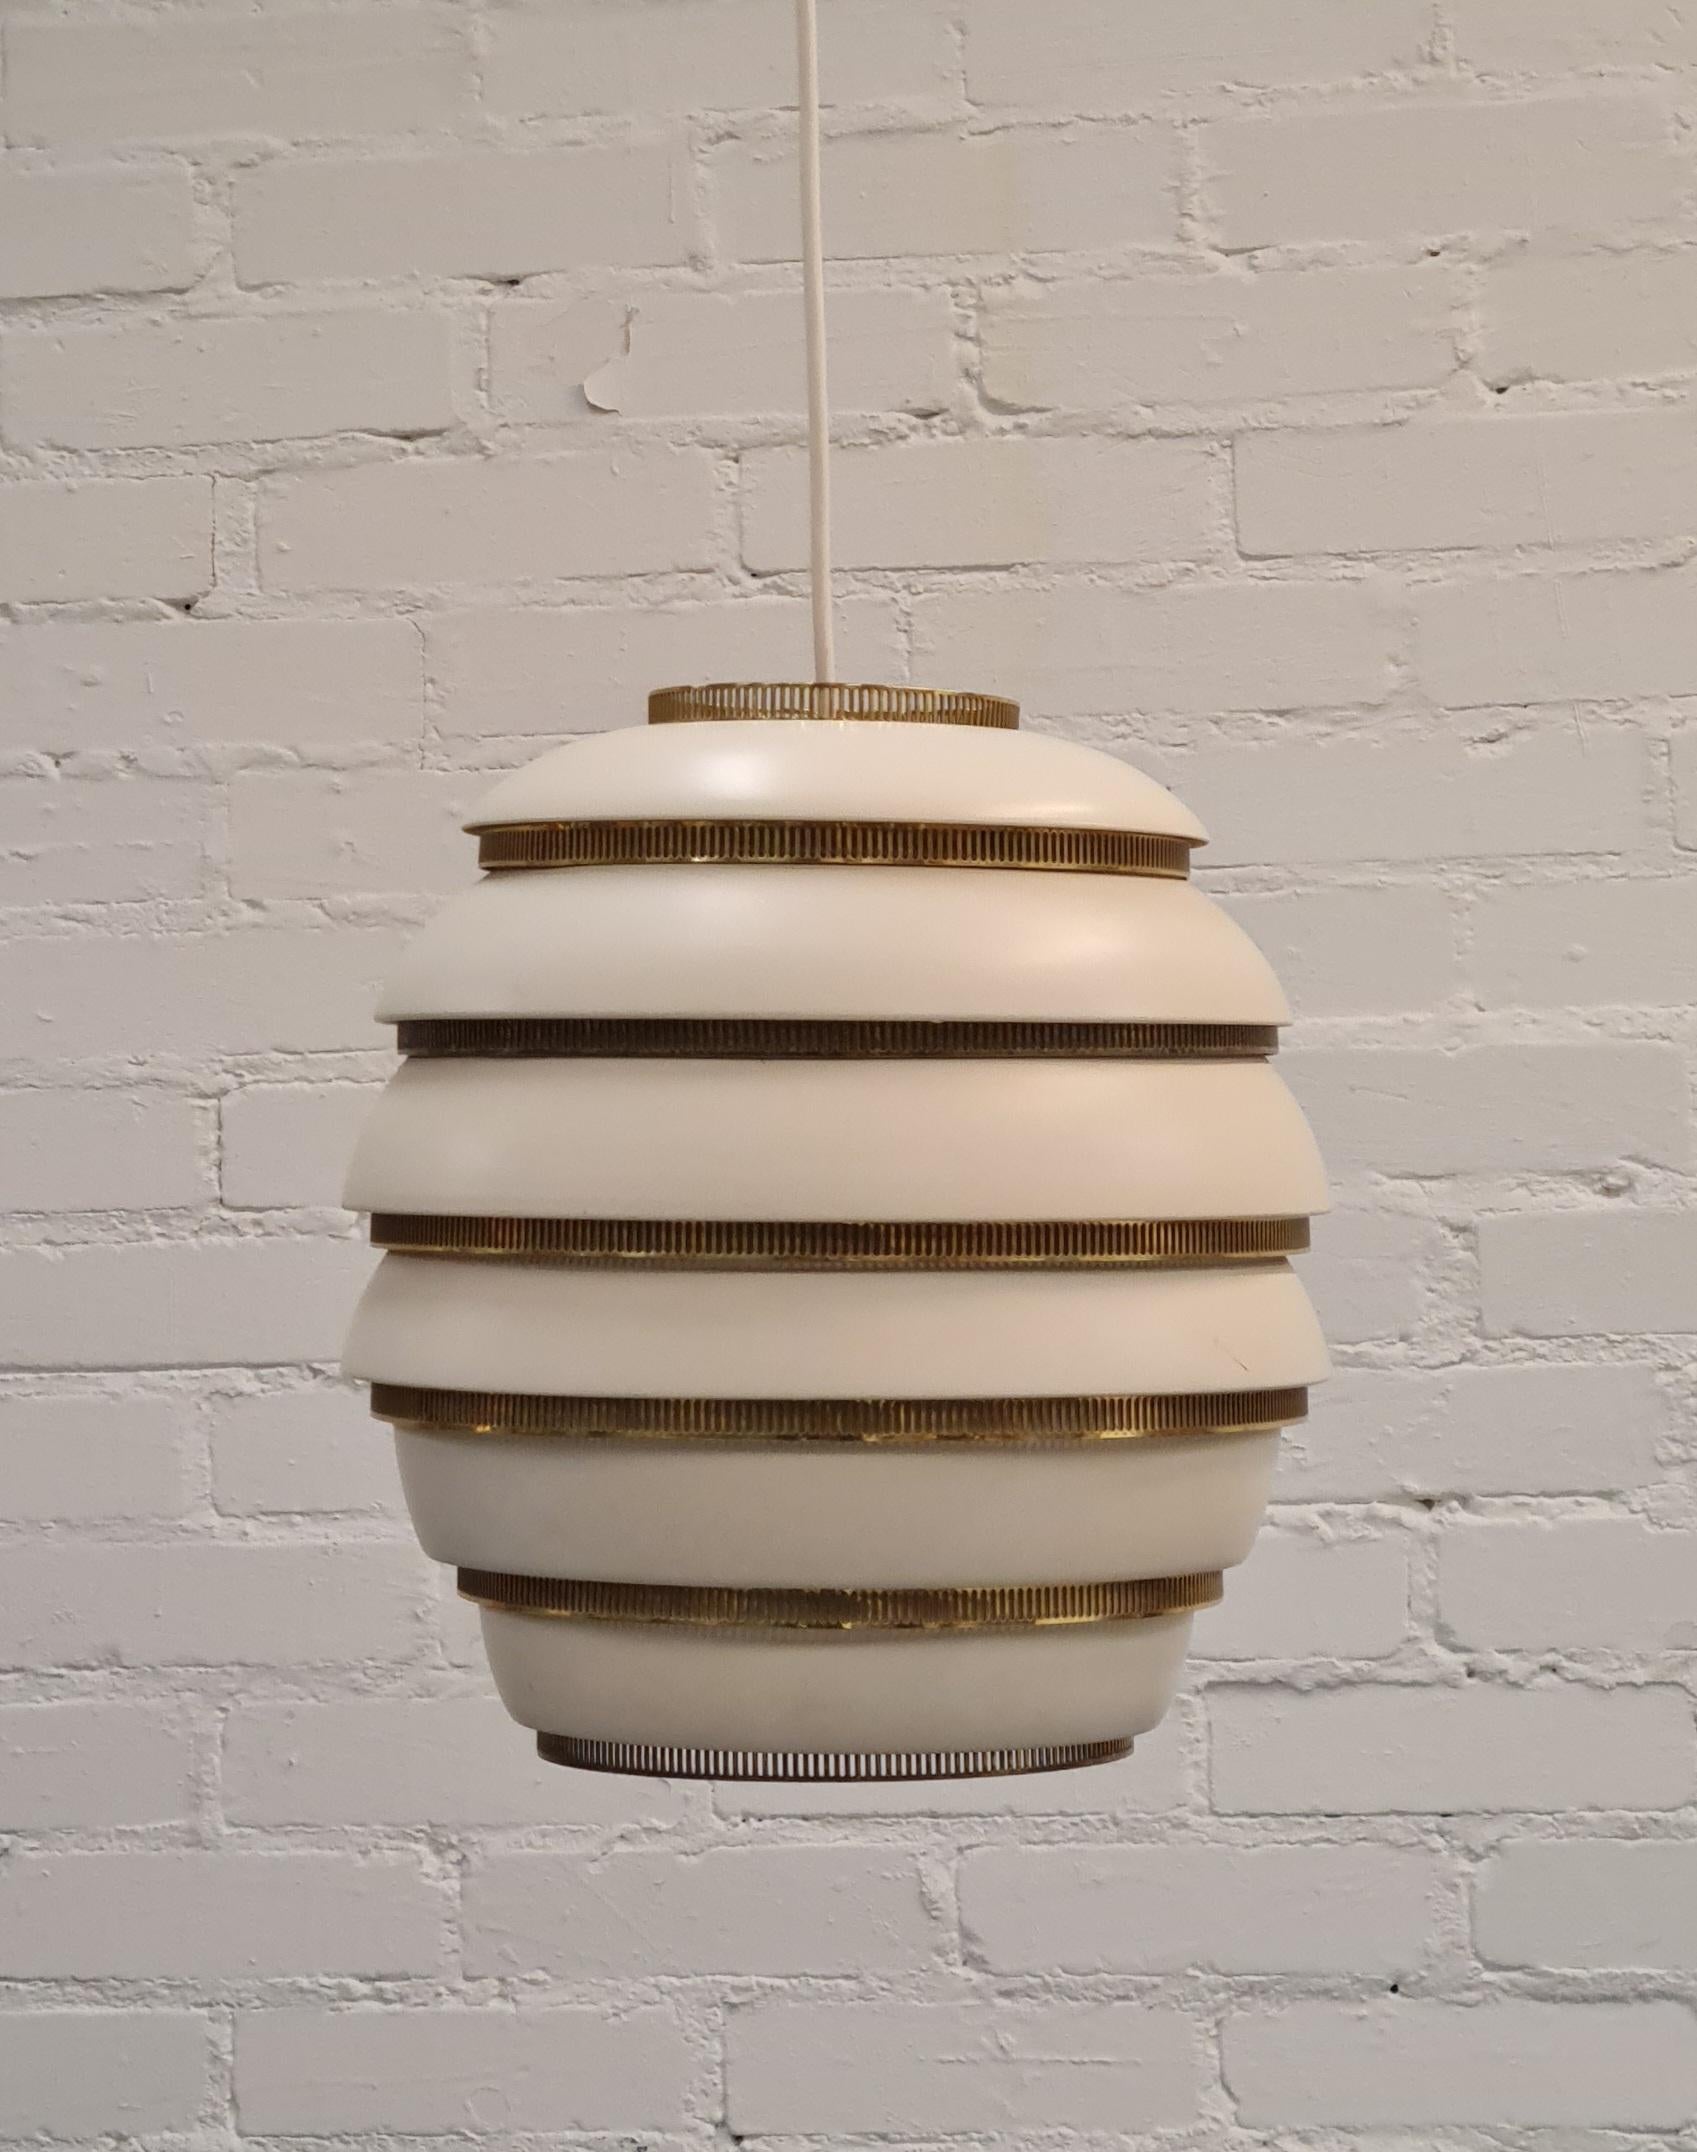 Dies ist einer der ikonischsten Beleuchtungsentwürfe von Alvar Aalto. Es wurde erstmals 1953 entworfen. Das Design ist unglaublich einfach und lehnt sich an die Natur an, da es die hängenden Bienenstöcke an einem Baum nachahmt. Er ist leicht, fühlt